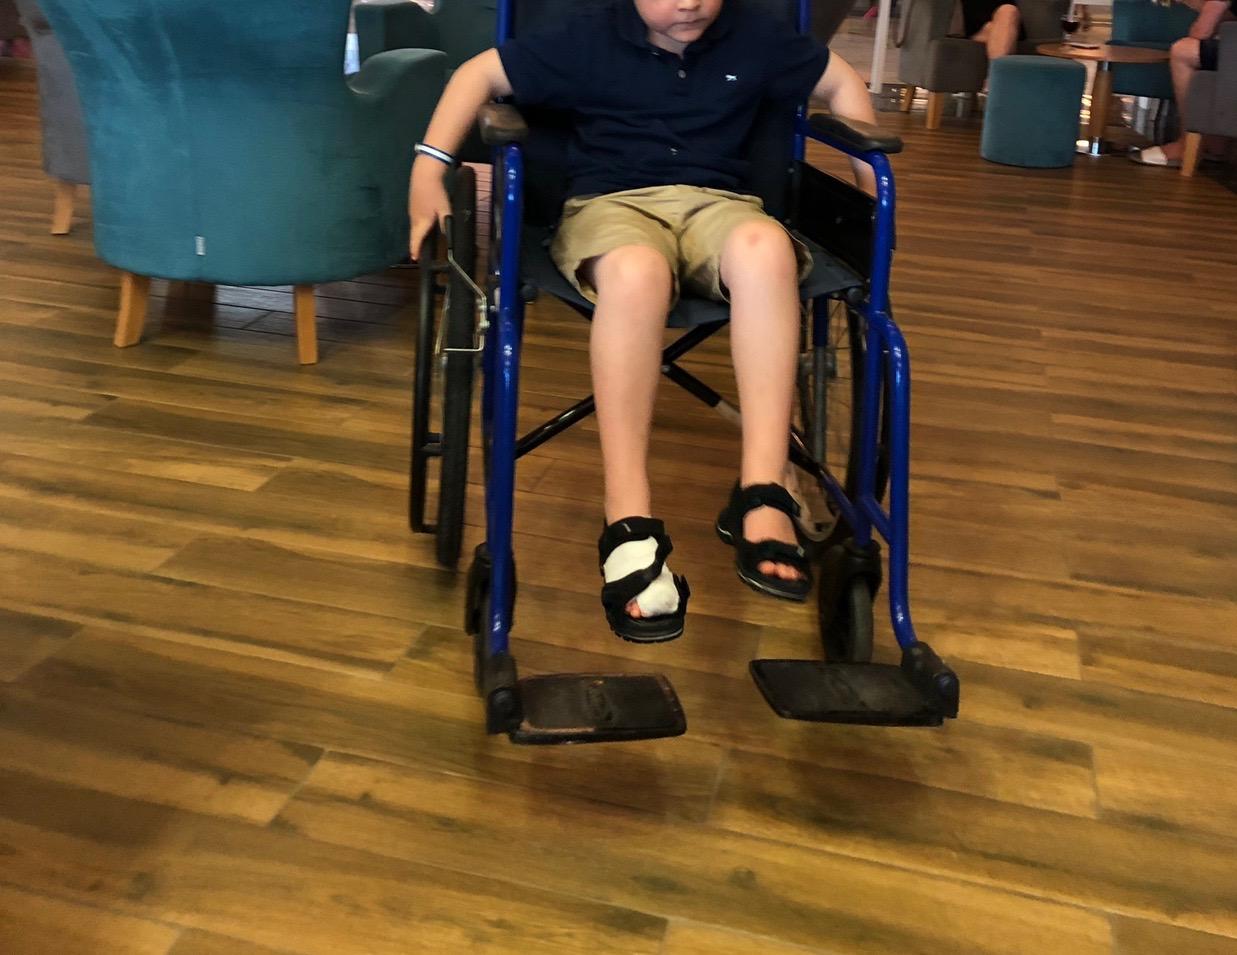 På slutet av resan hade han en rullstol så att han kunde ta sig ut lite. 